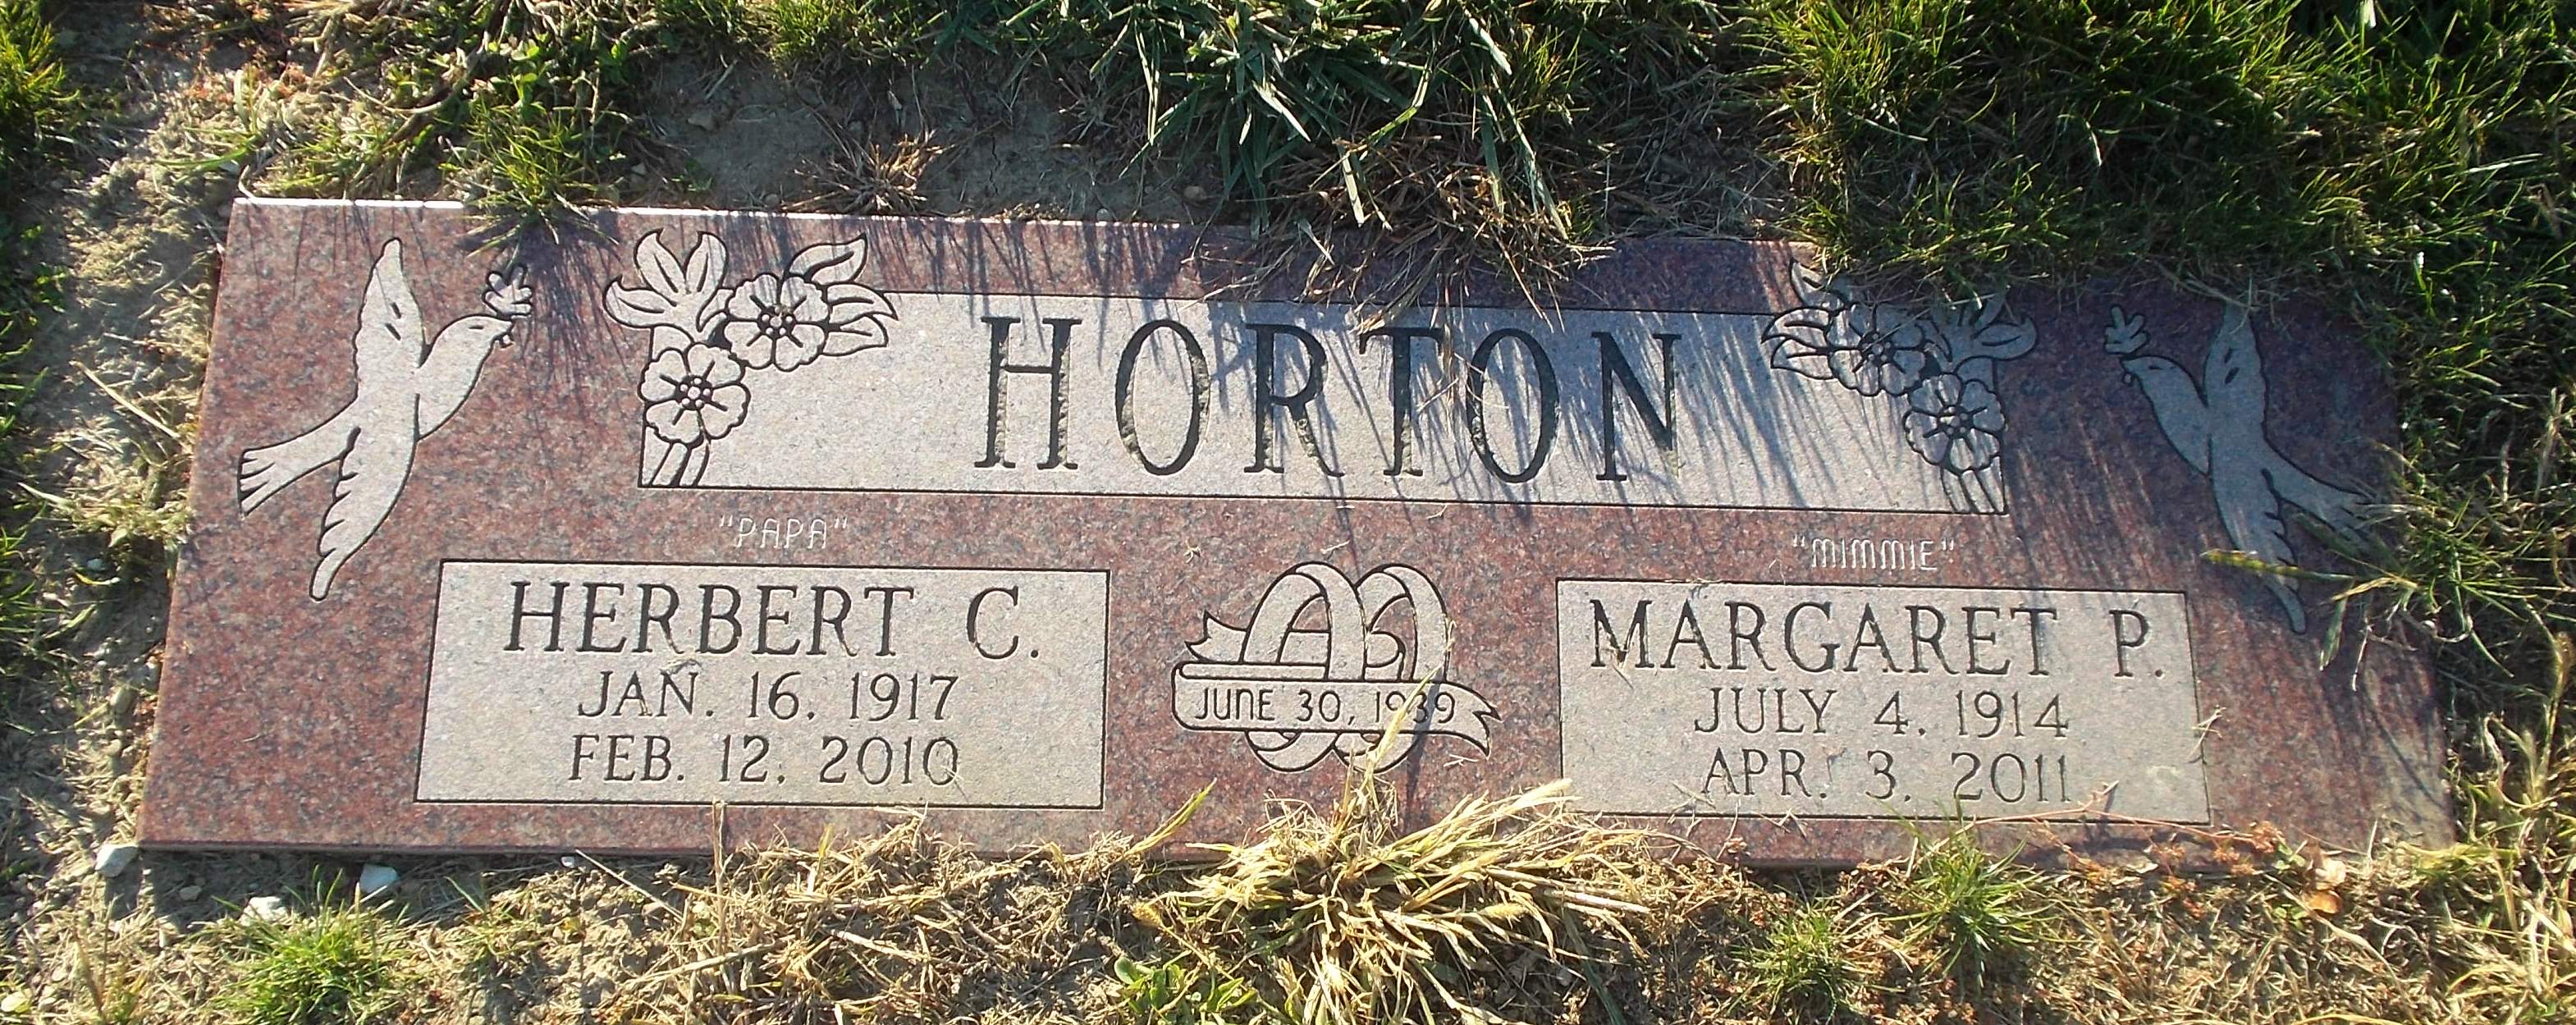 Herbert C Horton